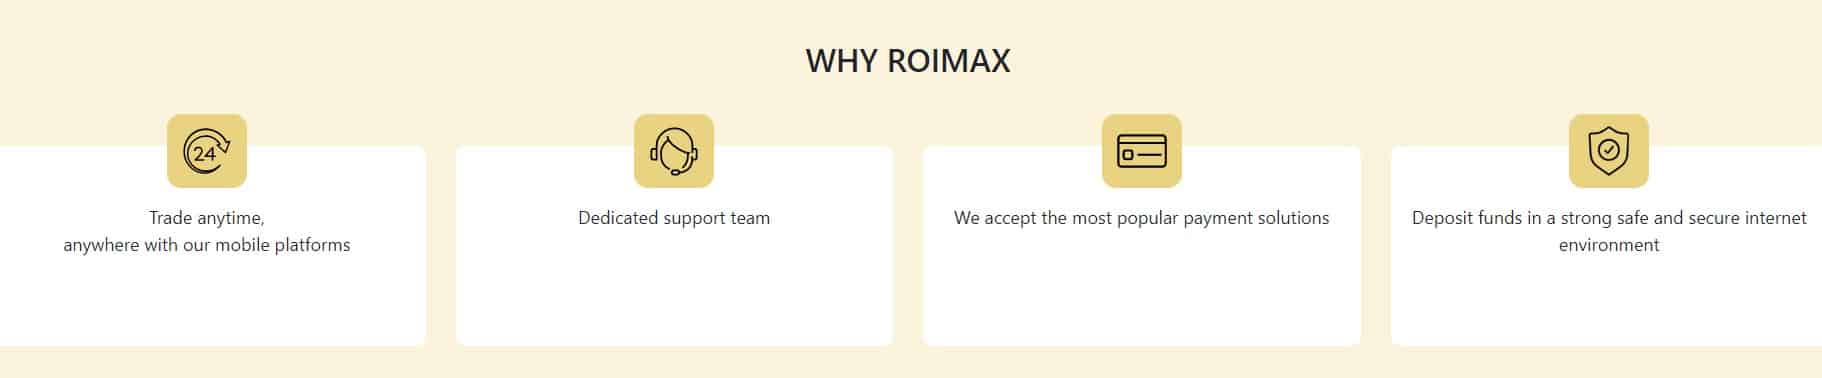 Why choose ROIMAX?